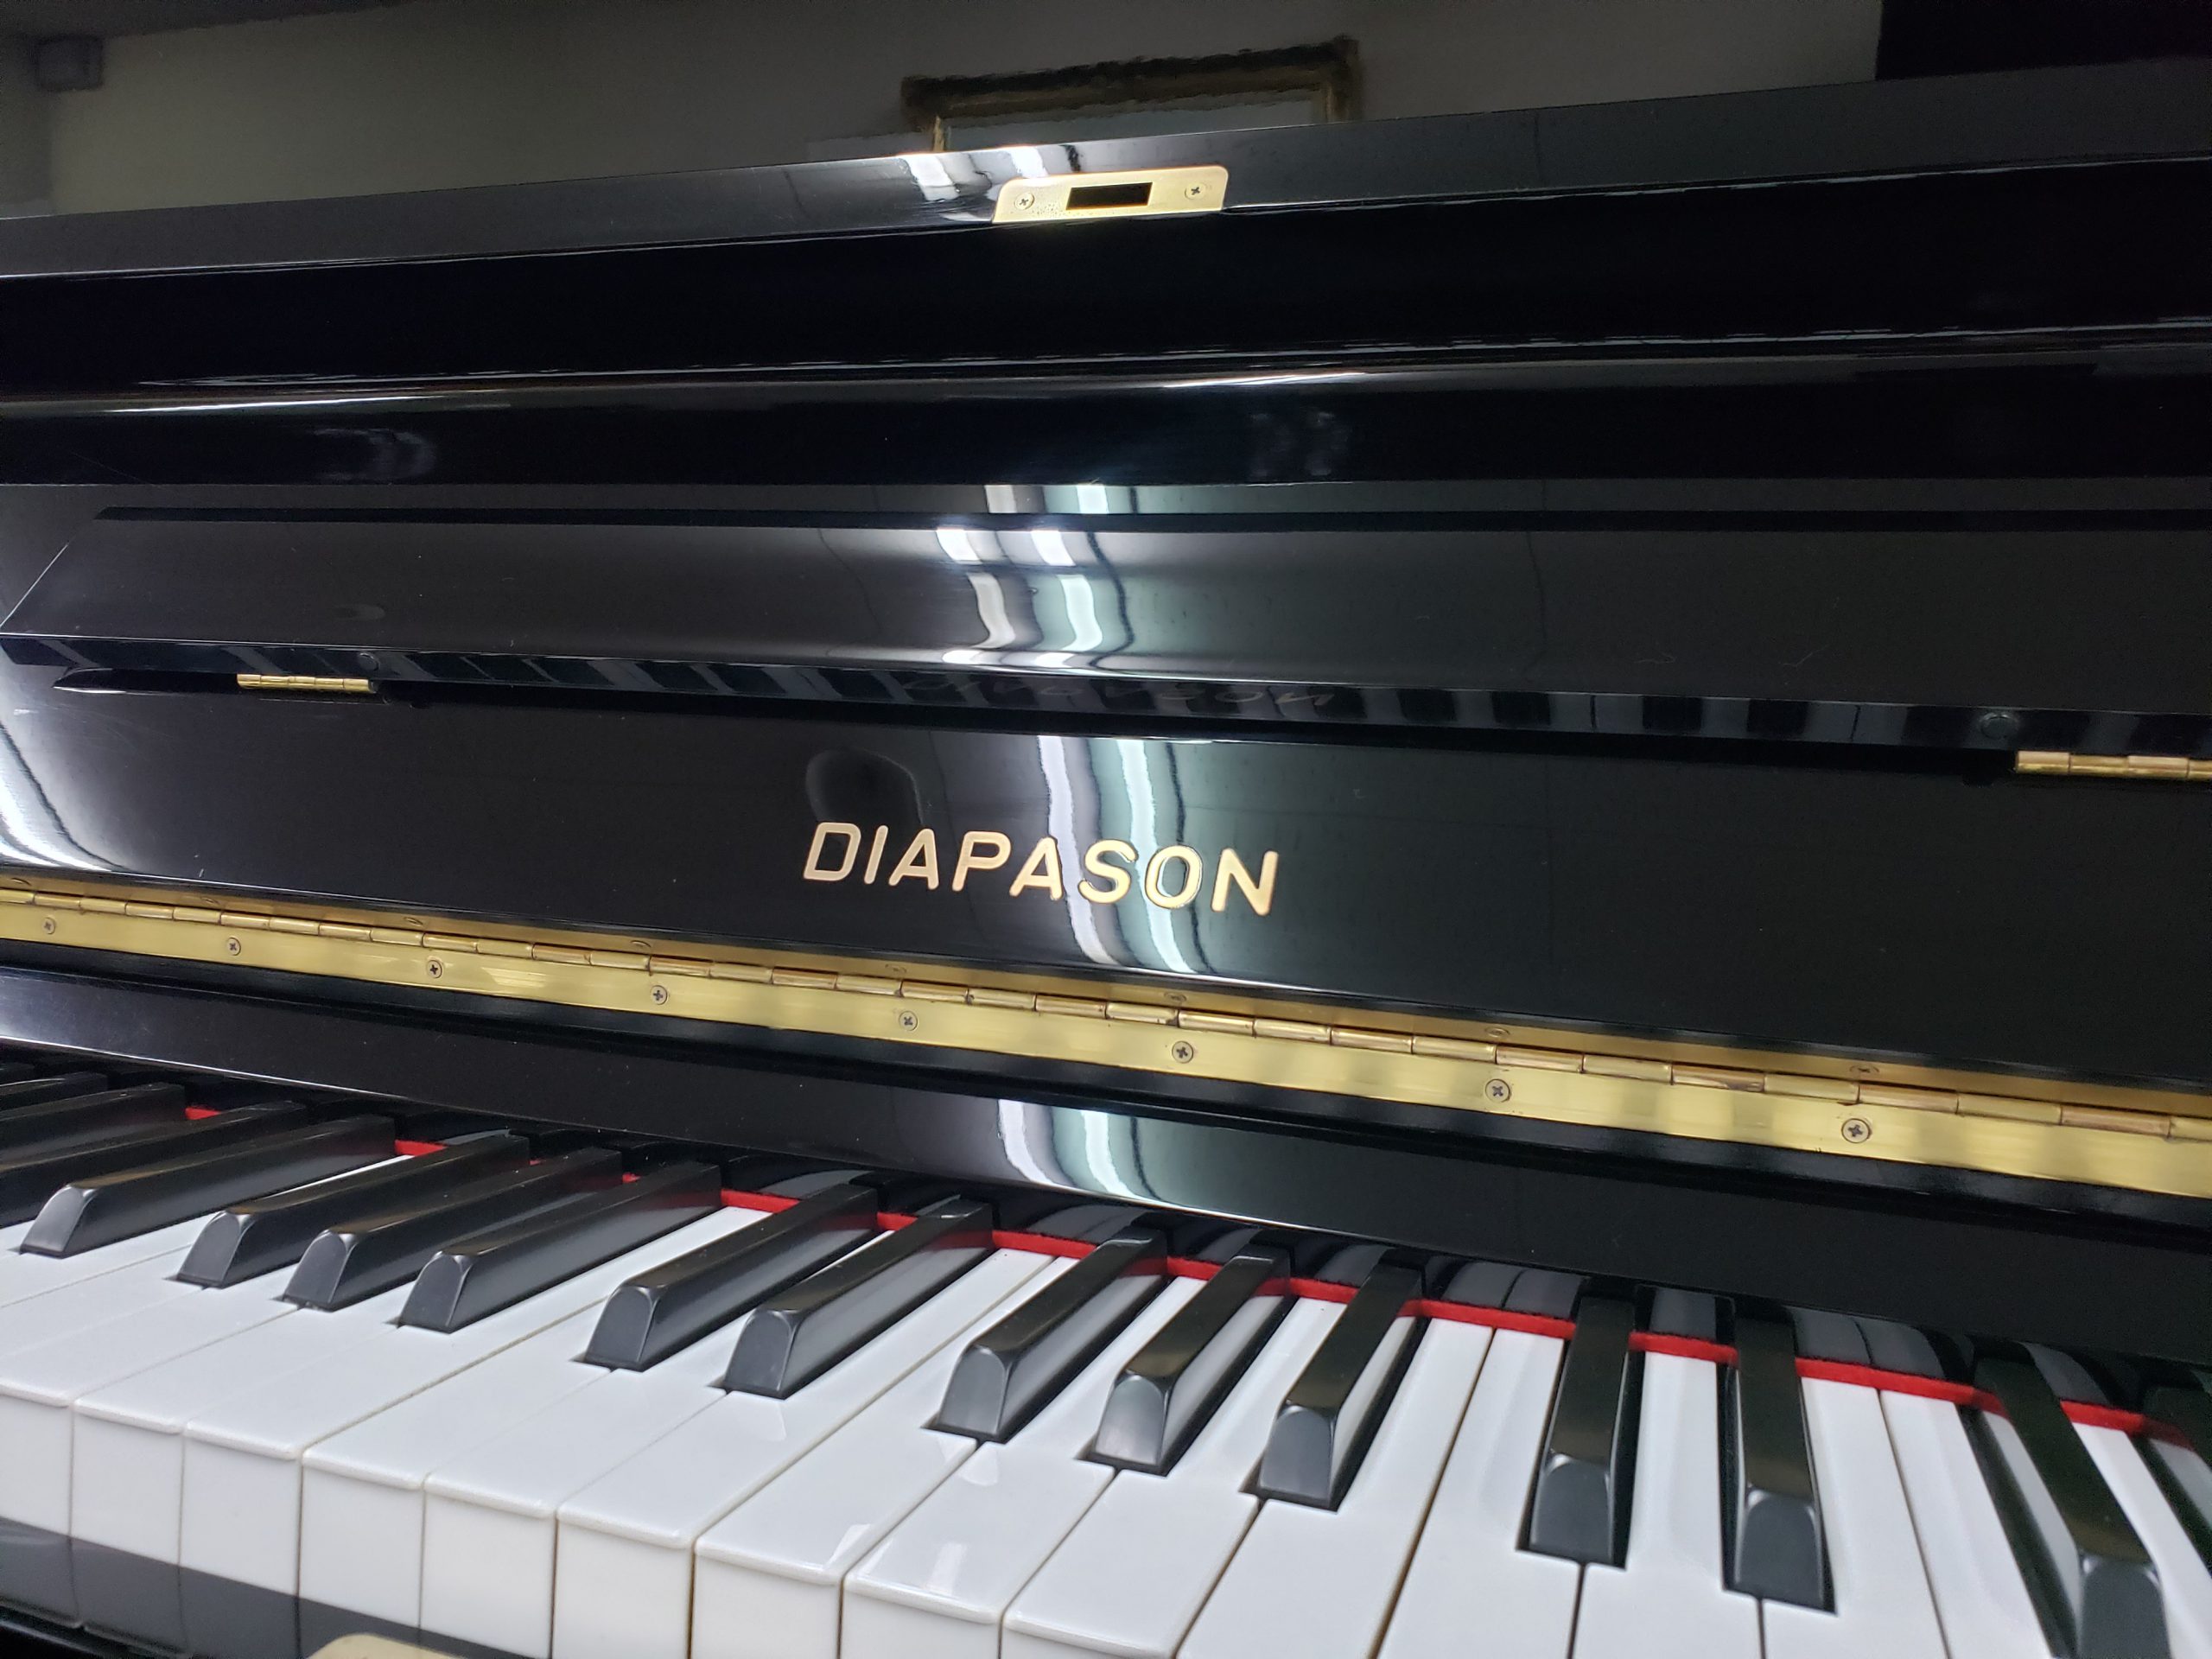 カワイ中古アップライトピアノ DIAPASON 126-CE